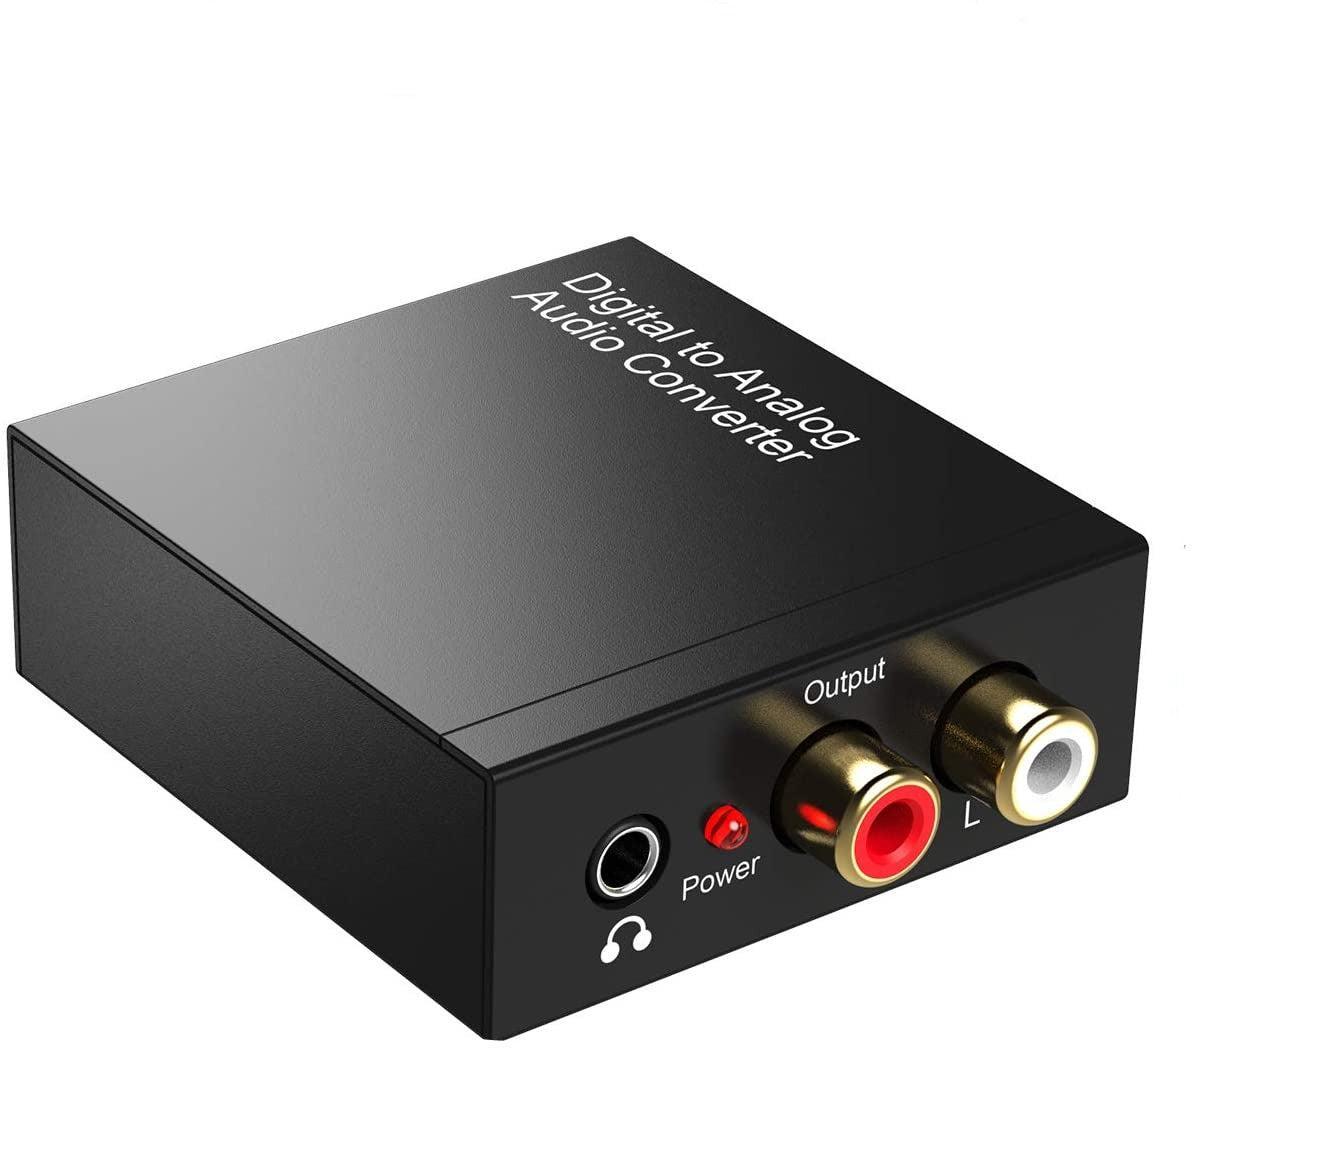 NÖRDIC 192KHz digital til analog audio konverter Toslink og Coaxial til RCA L / R og 3.5mm AUX D / A konverter